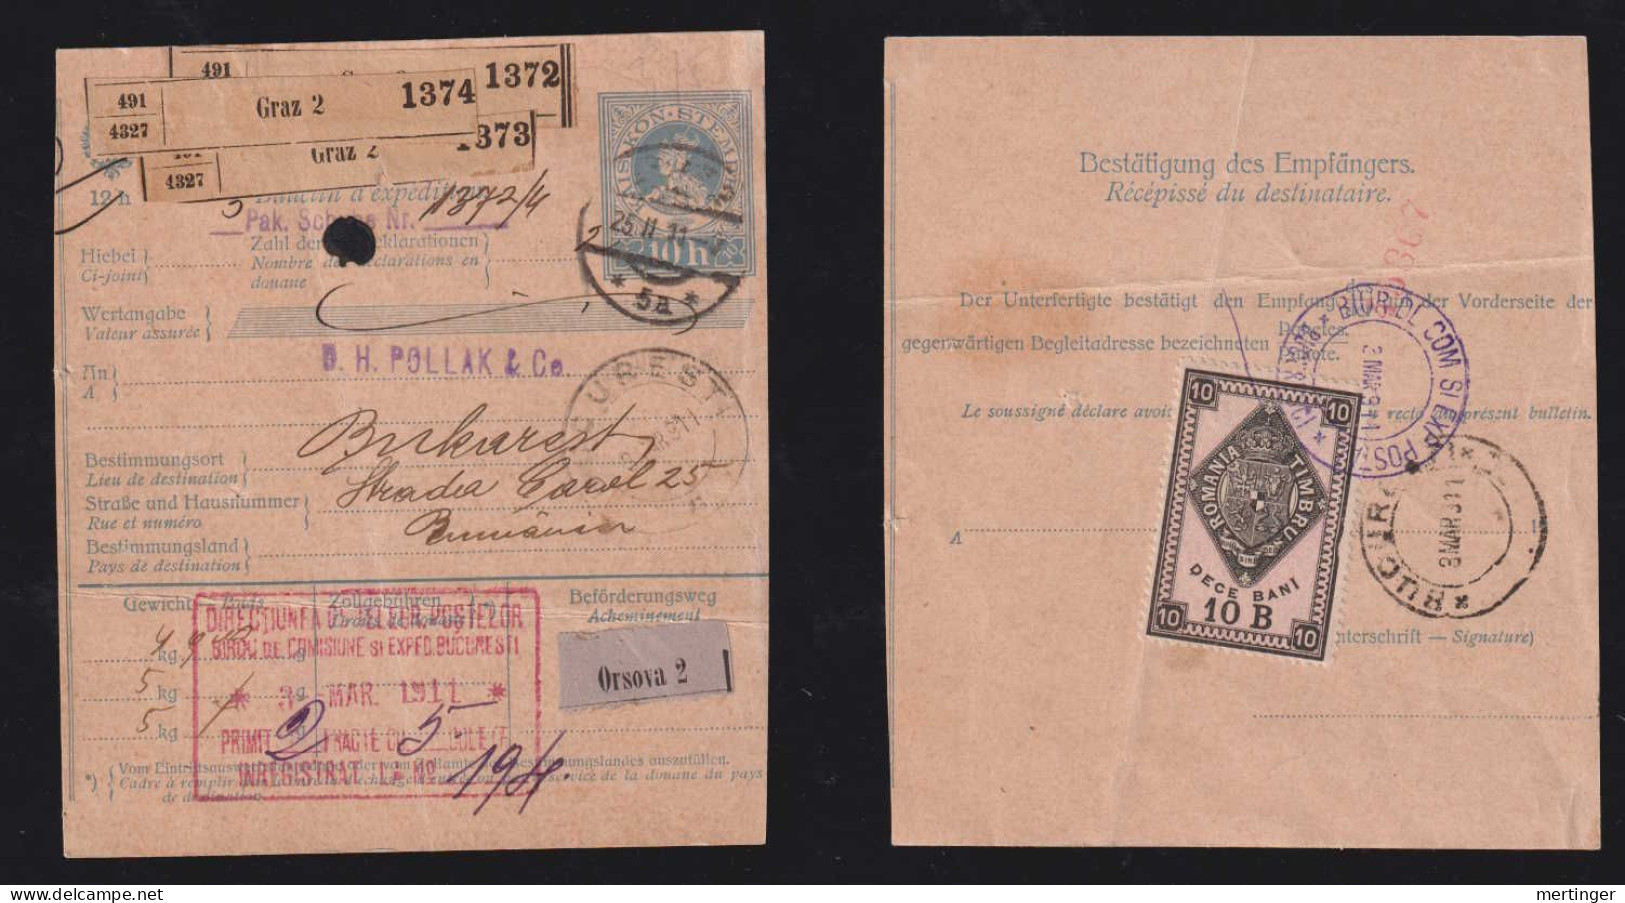 Rumänien Romania 1911 Parcle Card GRAZ Austria X BUCURESTI With Revenue Stamp - Lettres & Documents